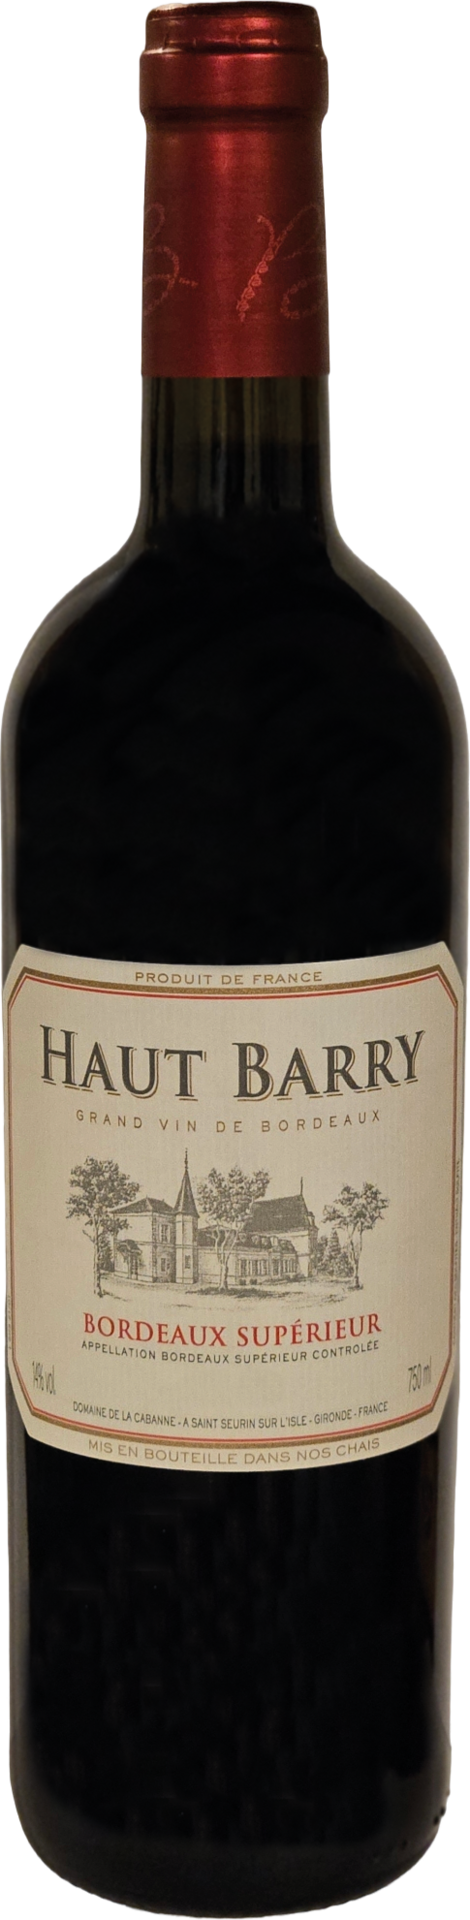 Haut Barry Bordeaux Supérieur